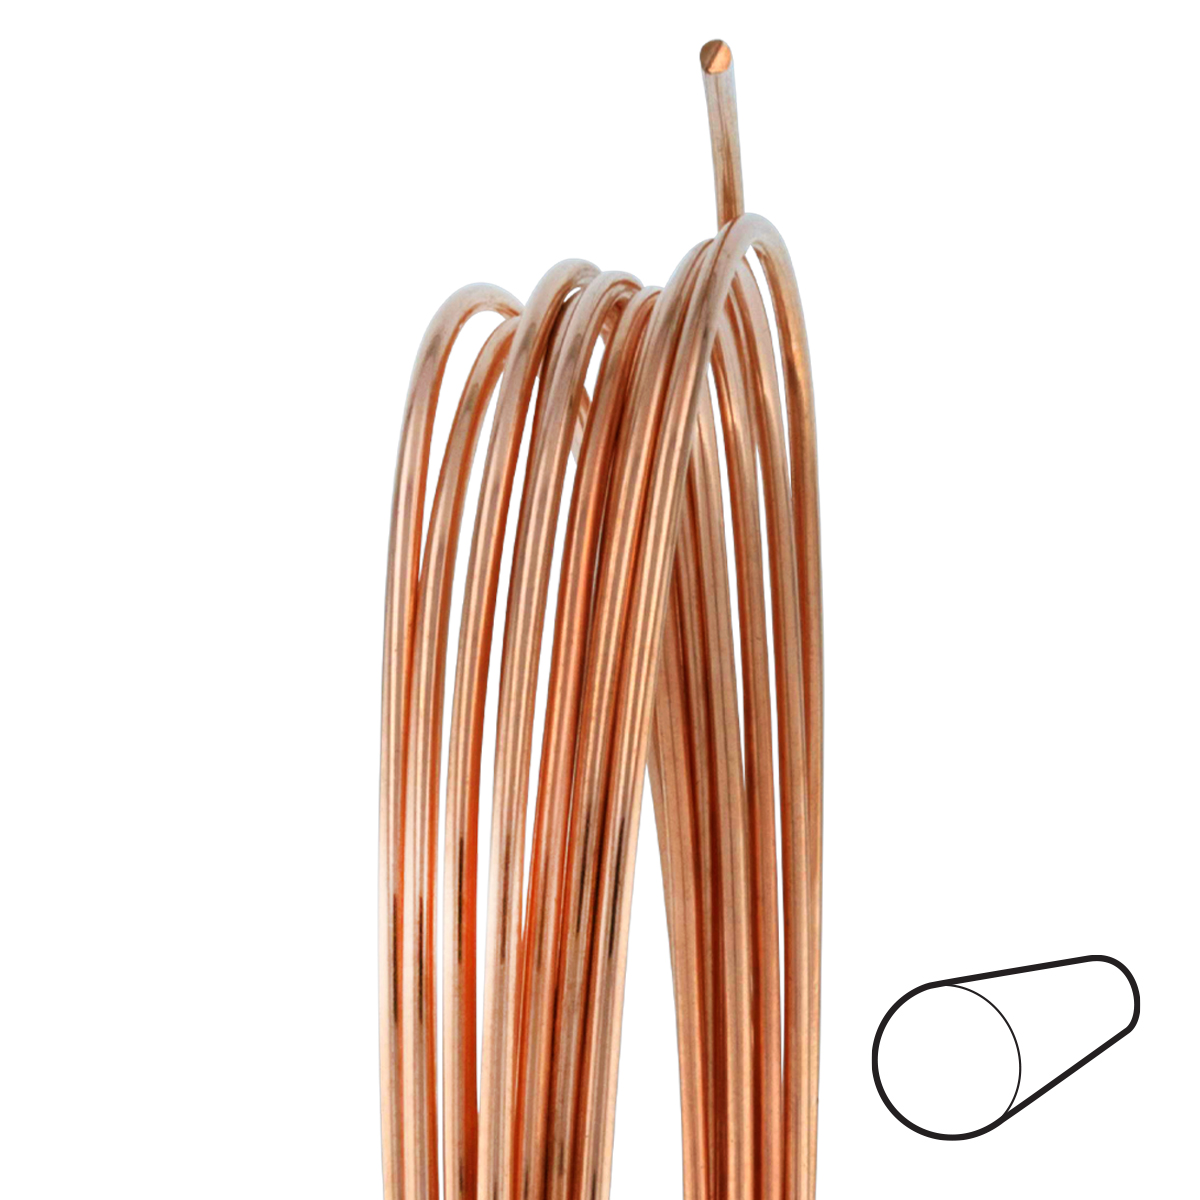 20 Gauge Round Half Hard Copper Wire: Wire Jewelry, Wire Wrap Tutorials